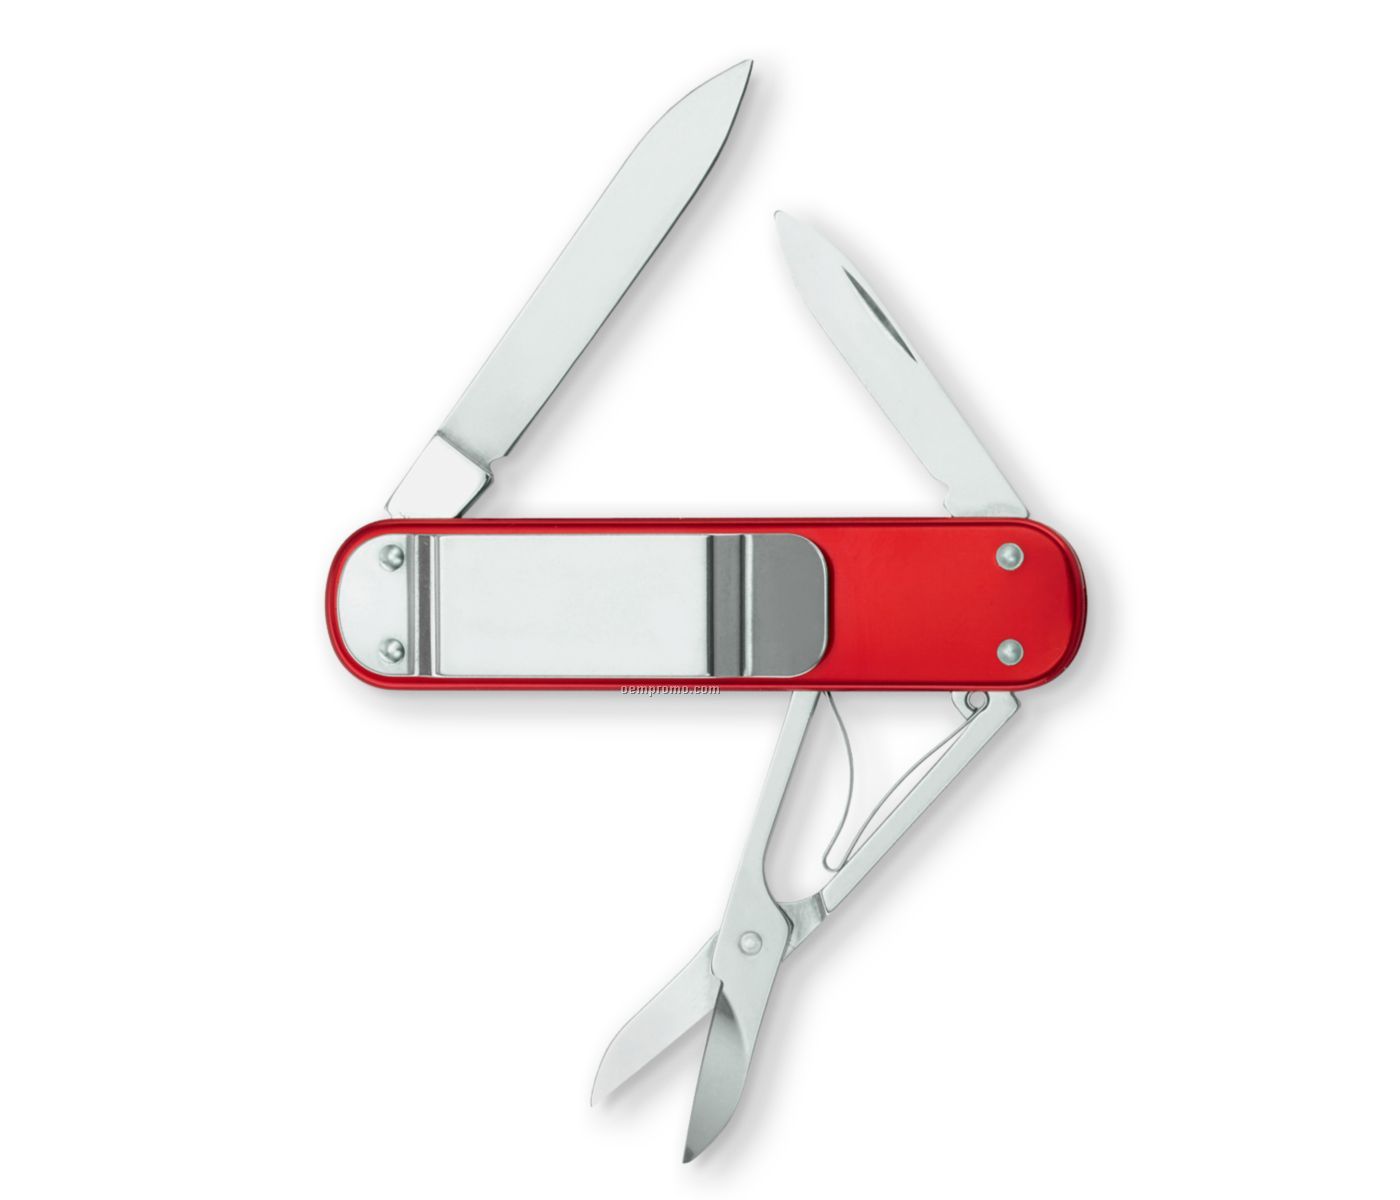 Money Clip Swiss Army Knife - Red Alox